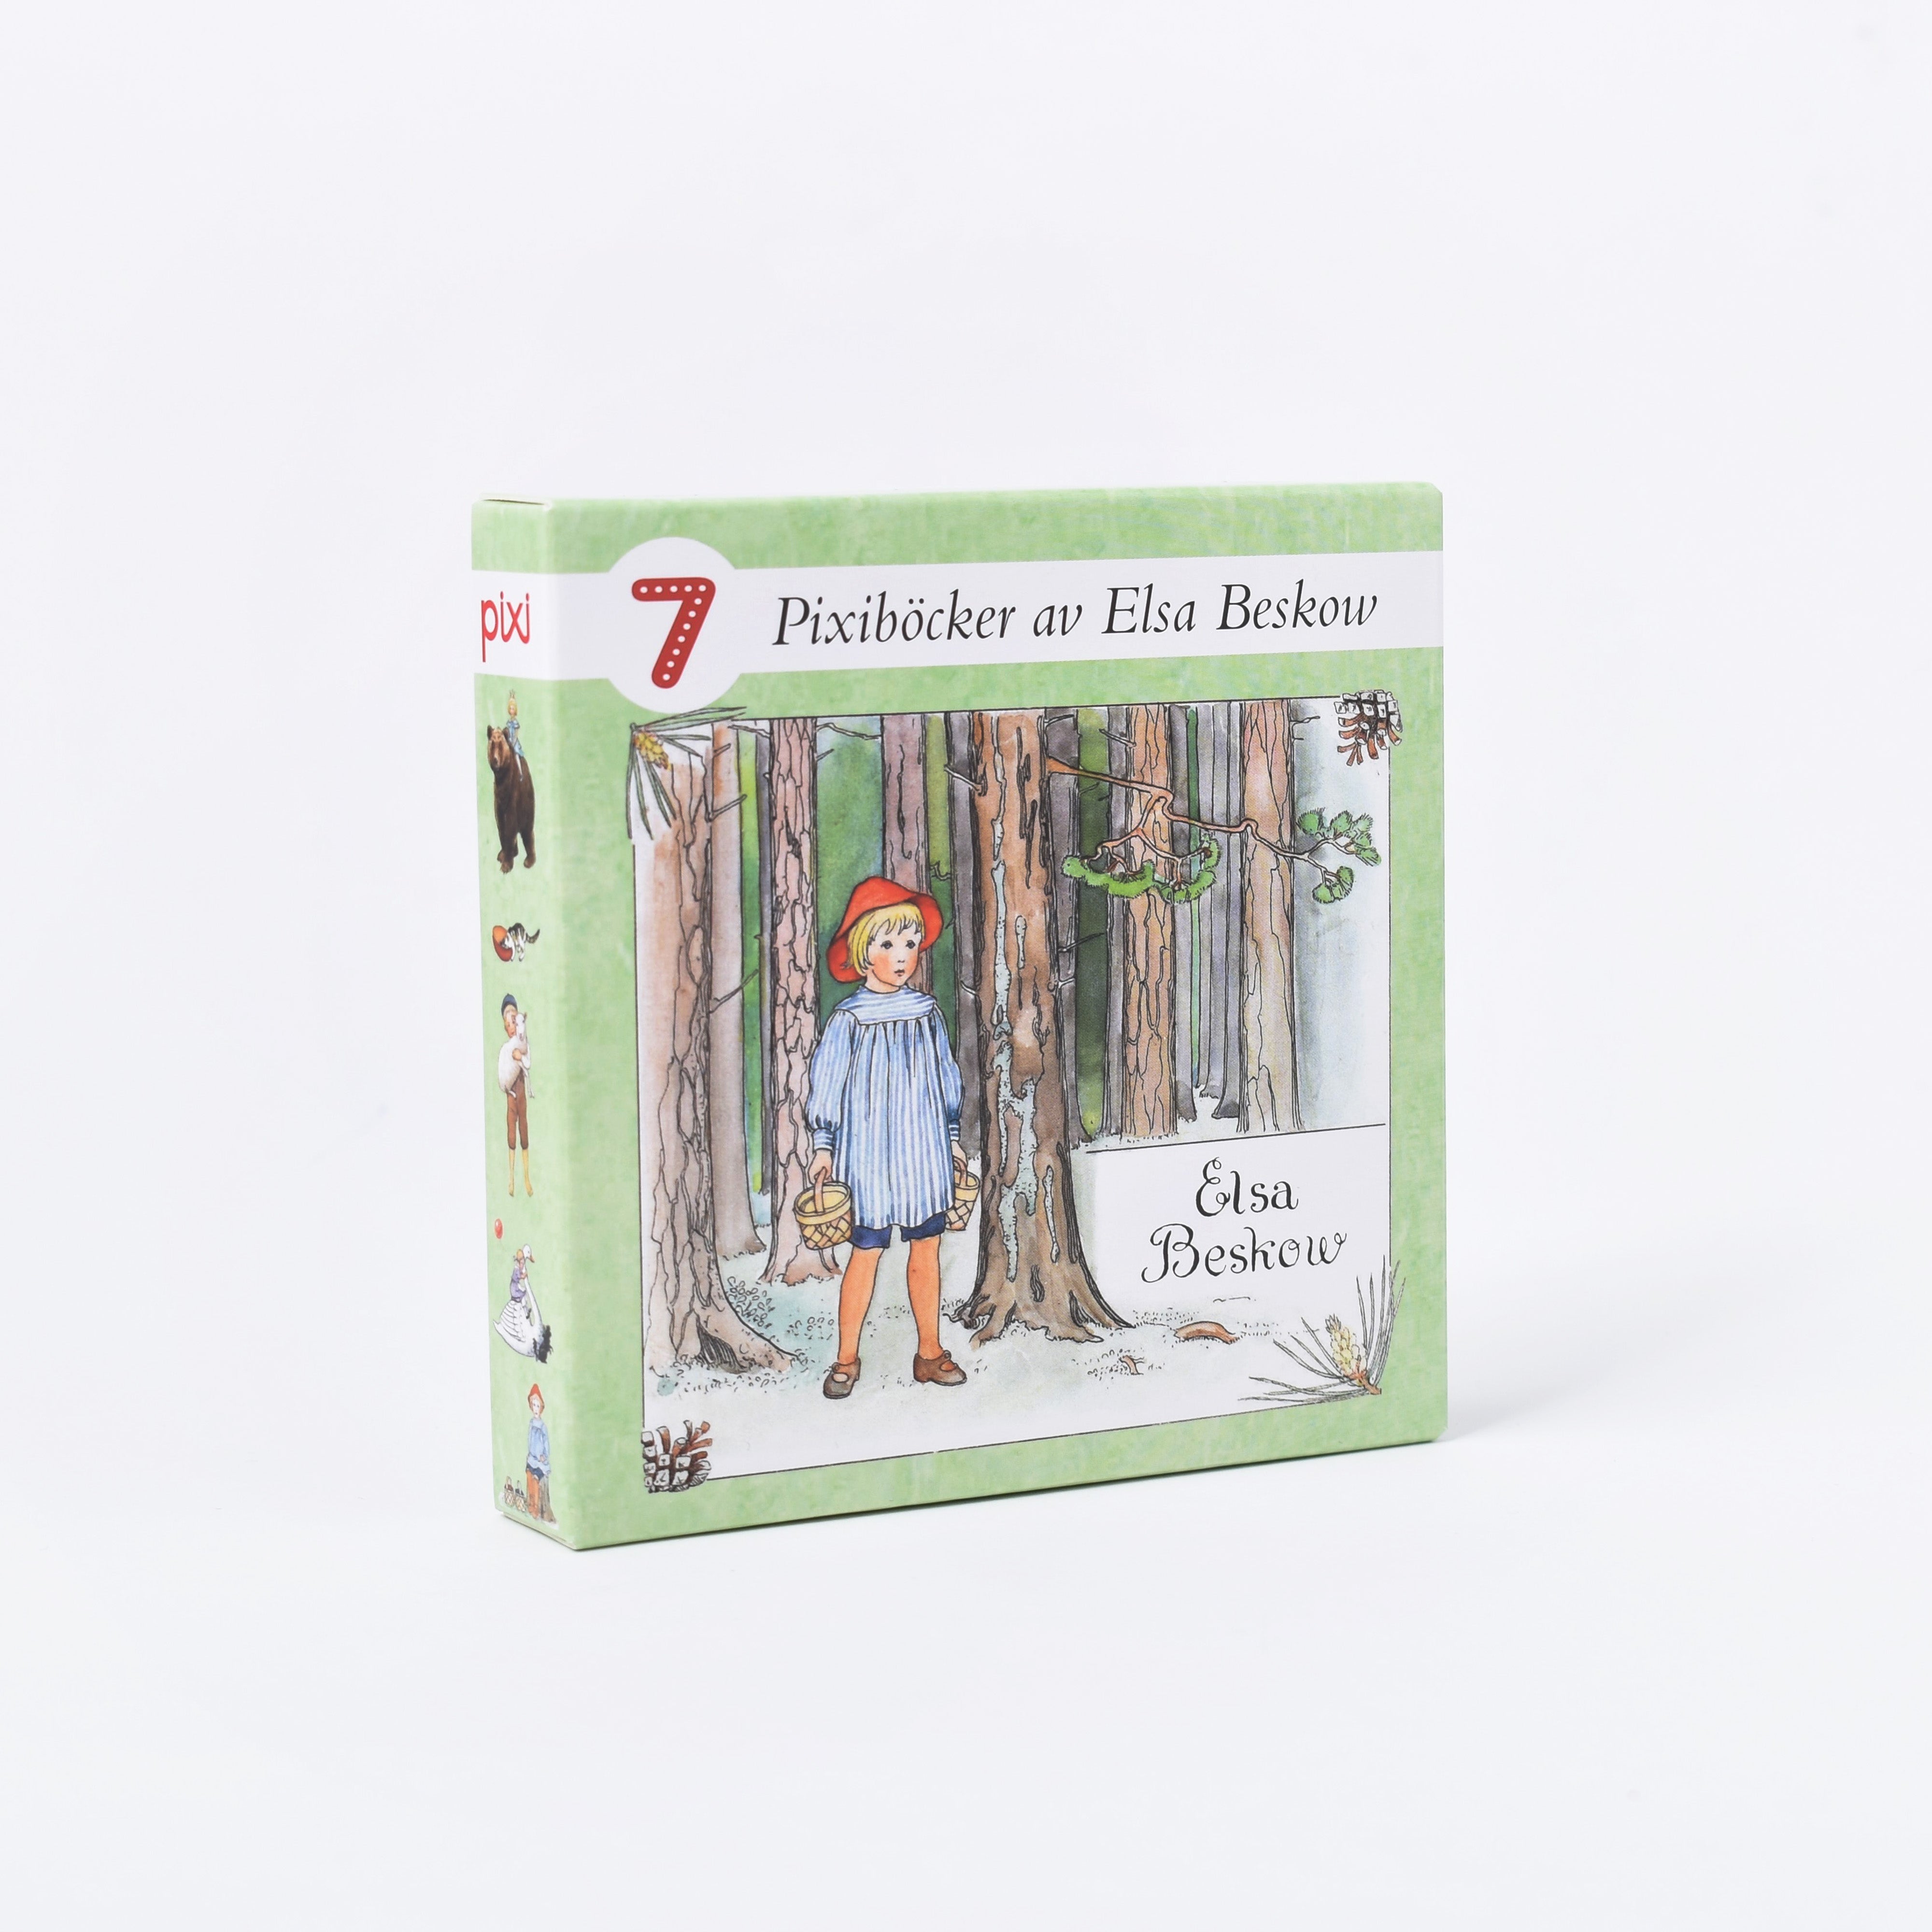 Grön ask med 7 pixiböcker av författaren och illustratören Elsa Beskow